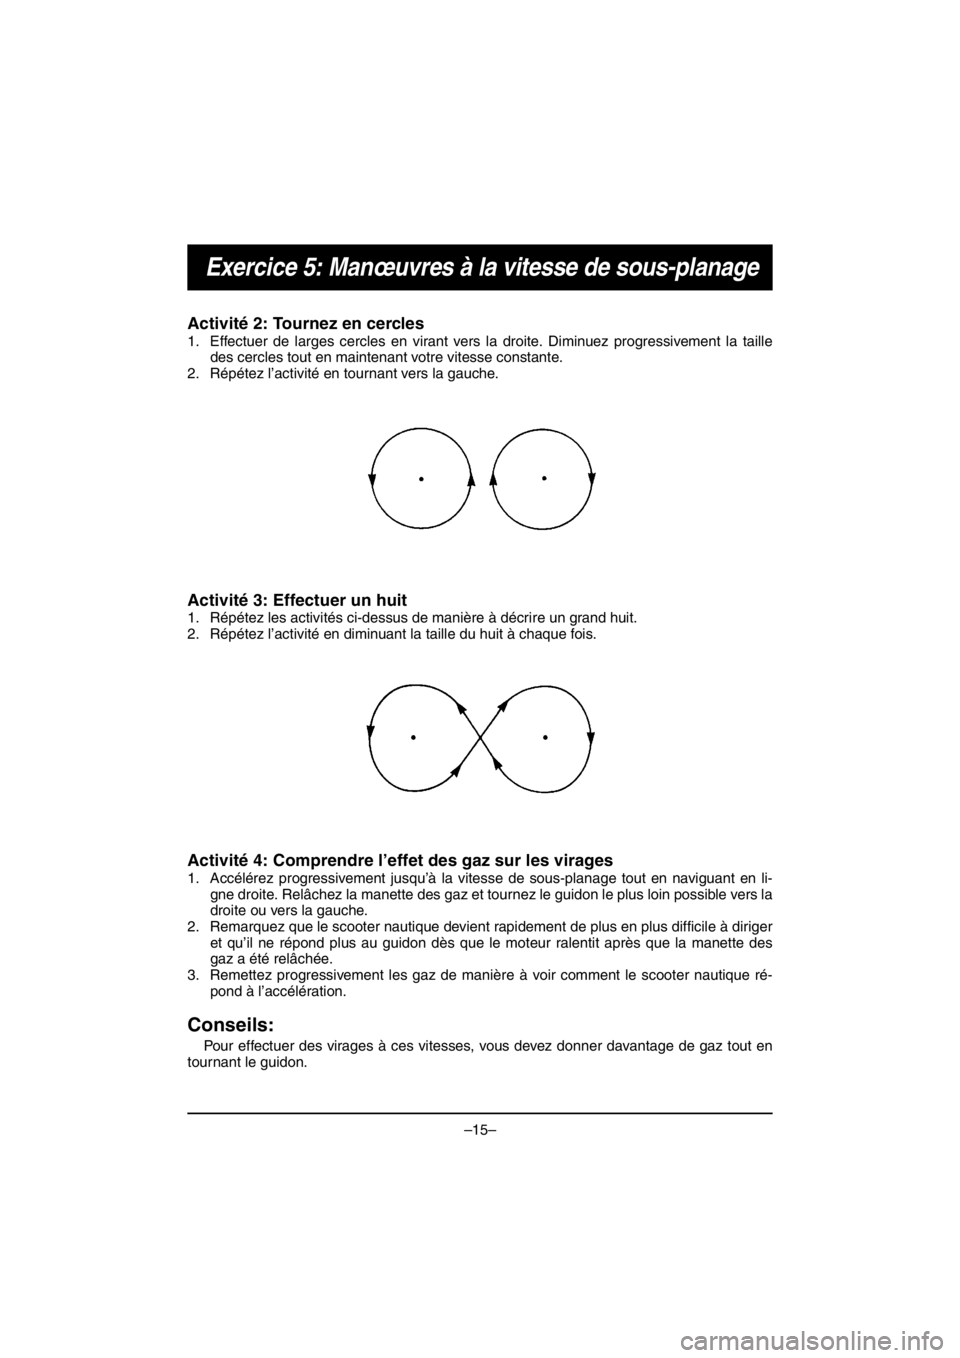 YAMAHA V1 2016  Manuale duso (in Italian) –15–
Exercice 5: Manœuvres à la vitesse de sous-planage
Activité 2: Tournez en cercles 
1. Effectuer de larges cercles en virant vers la droite. Diminuez progressivement la taille
des cercles t